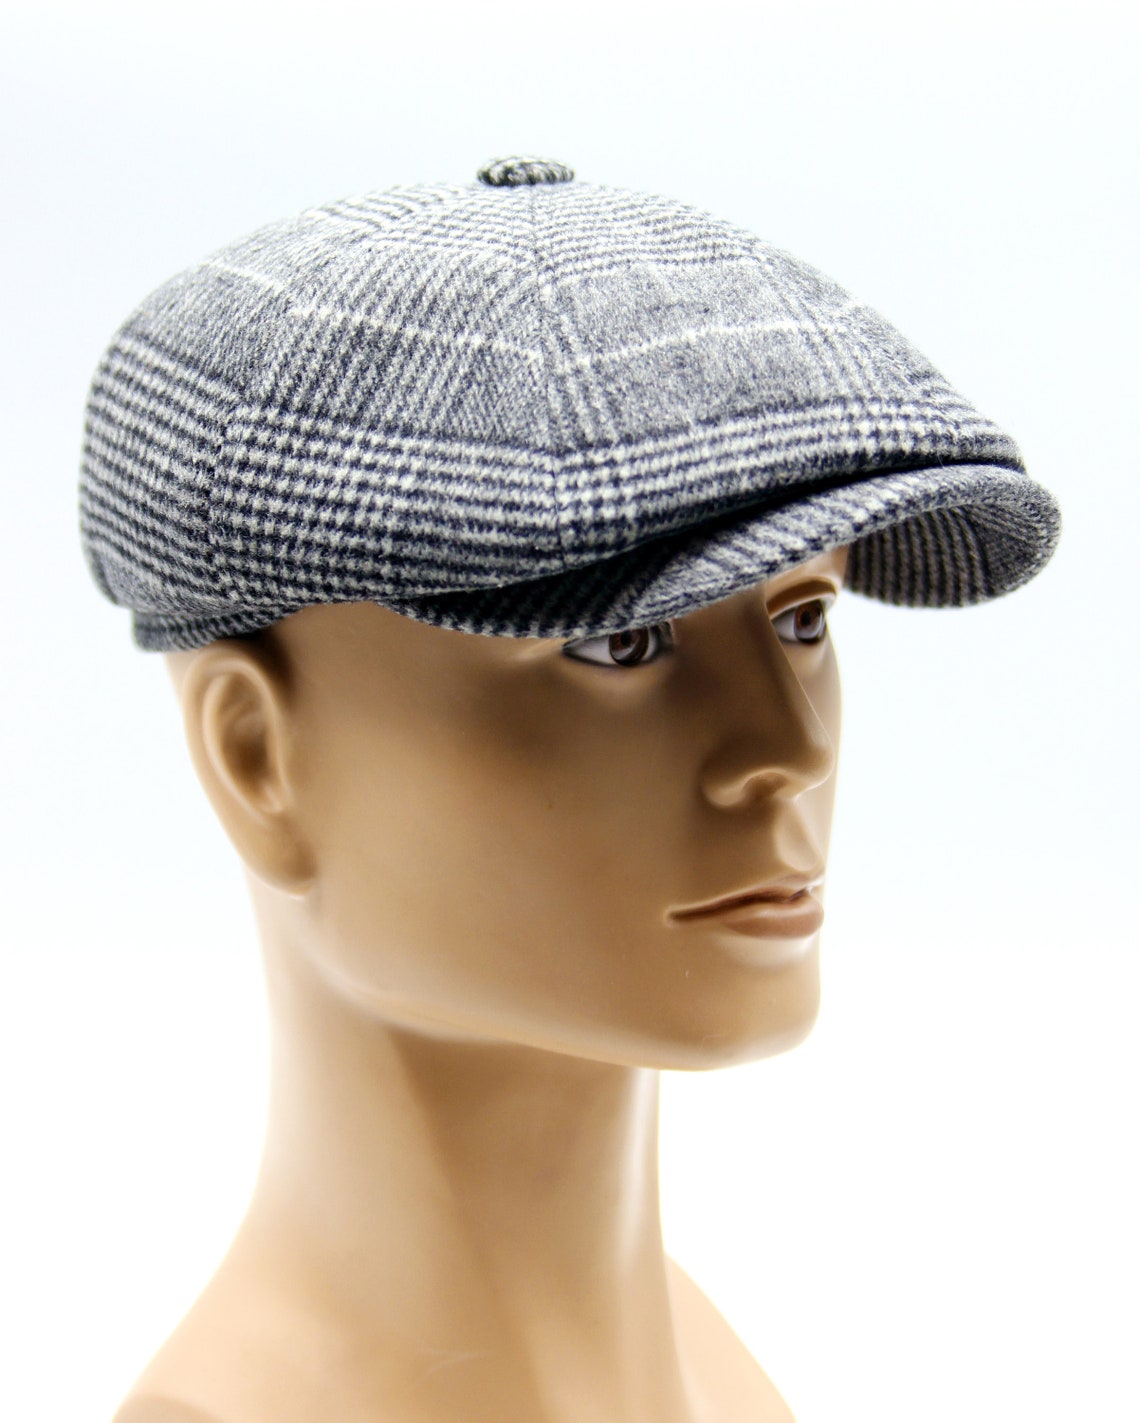 Grey Newsboy Cap Flat Wool Men's Bakers Boy Hat. | Etsy